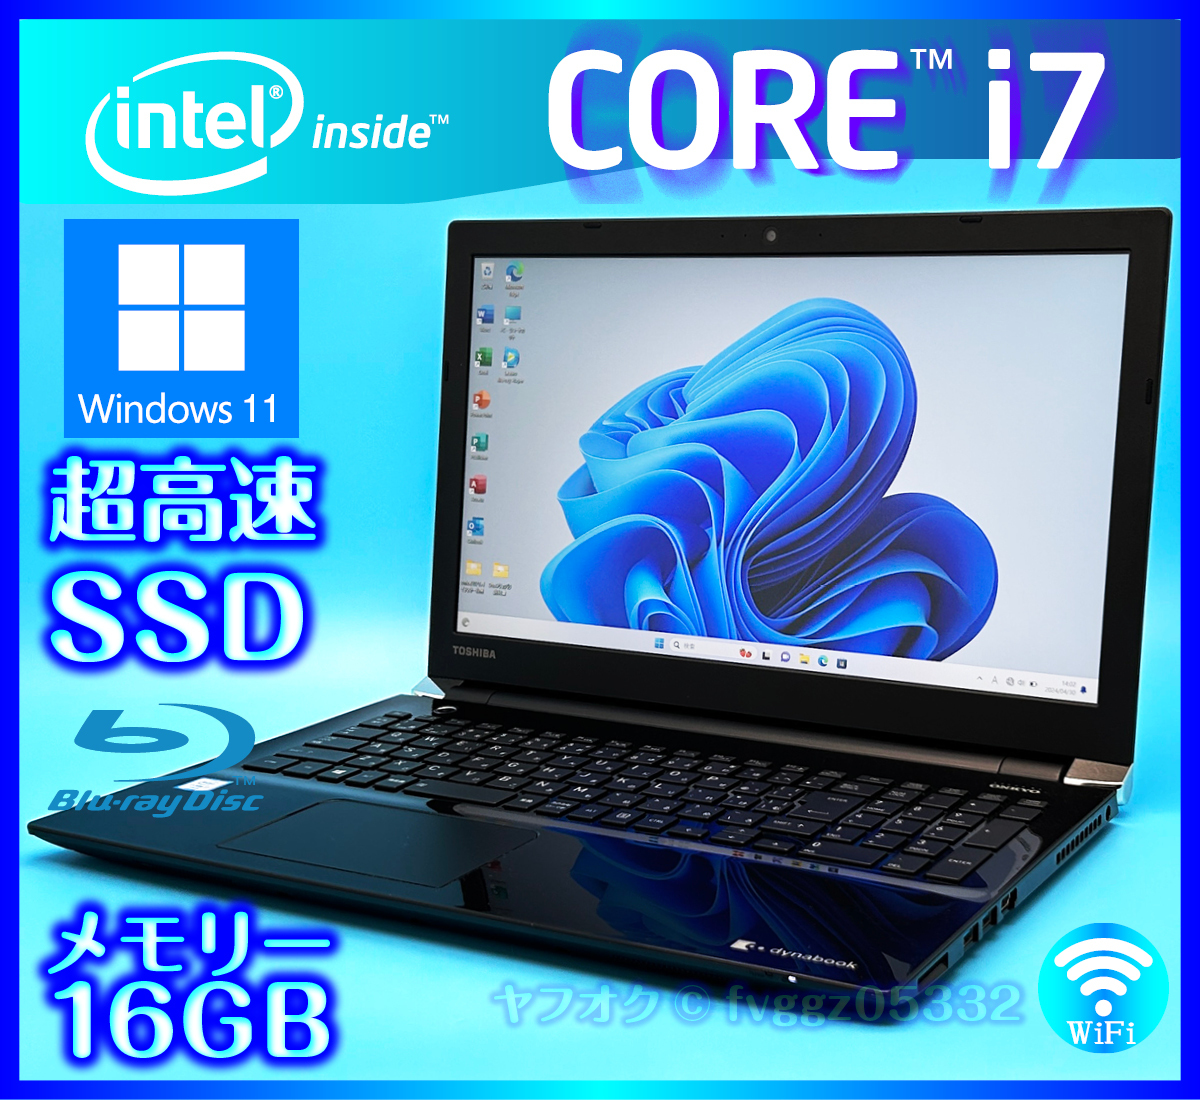 東芝 フルHD液晶 Core i7 6500U SSD 新品 1TB (1000GB) +外付HDD 750GB 大容量メモリ 16GB Windows11 Office2021 Webカメラ ノートパソコン_画像1